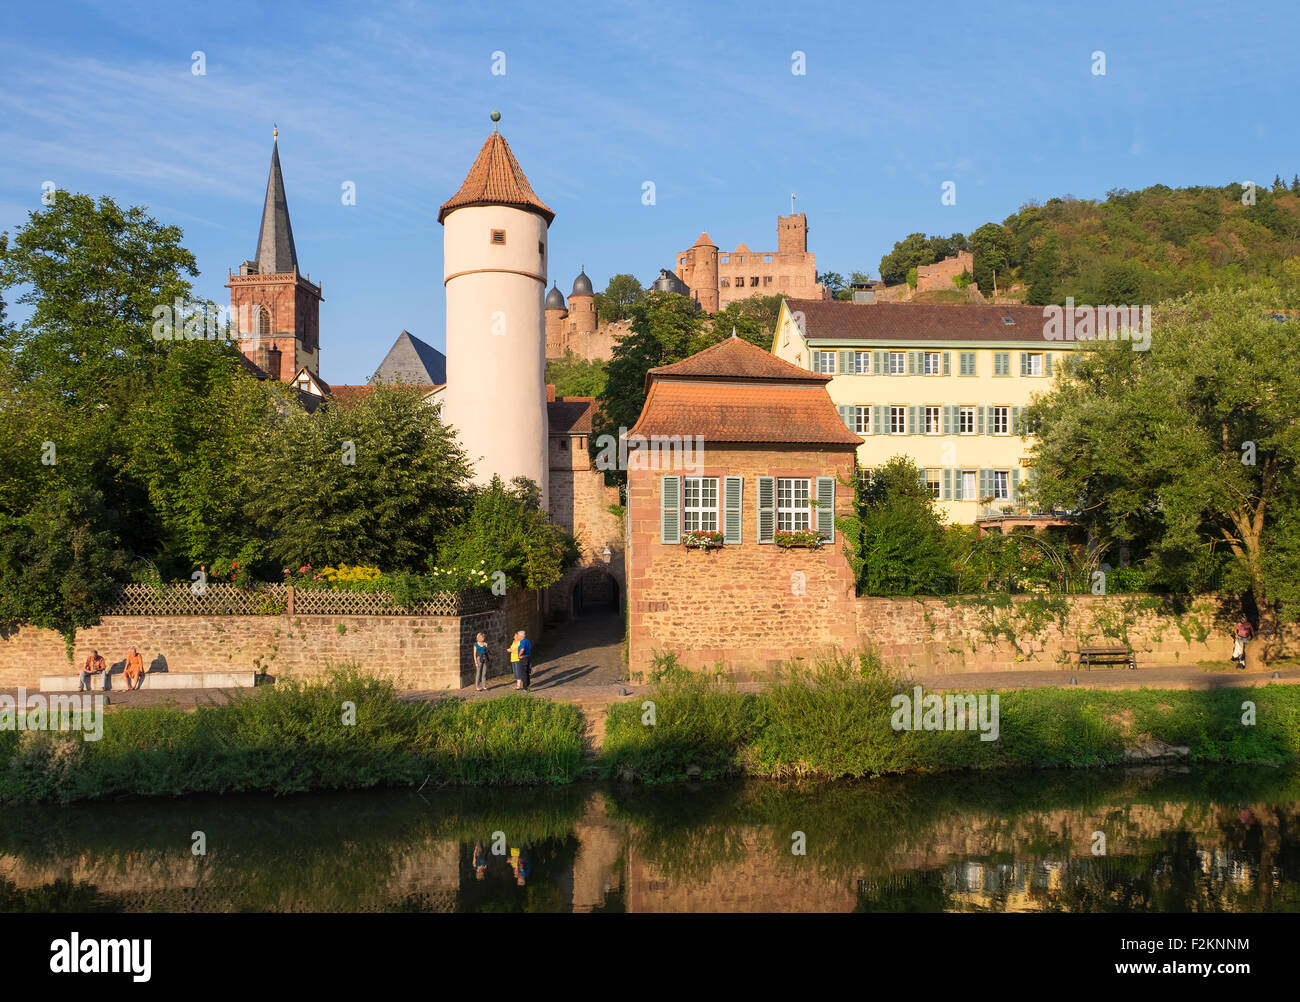 Río Tauber, Kittsteintor, Torre Roja, Iglesia de la ciudad y ruinas de castillos, Wertheim, Baden-Württemberg, Alemania Foto de stock